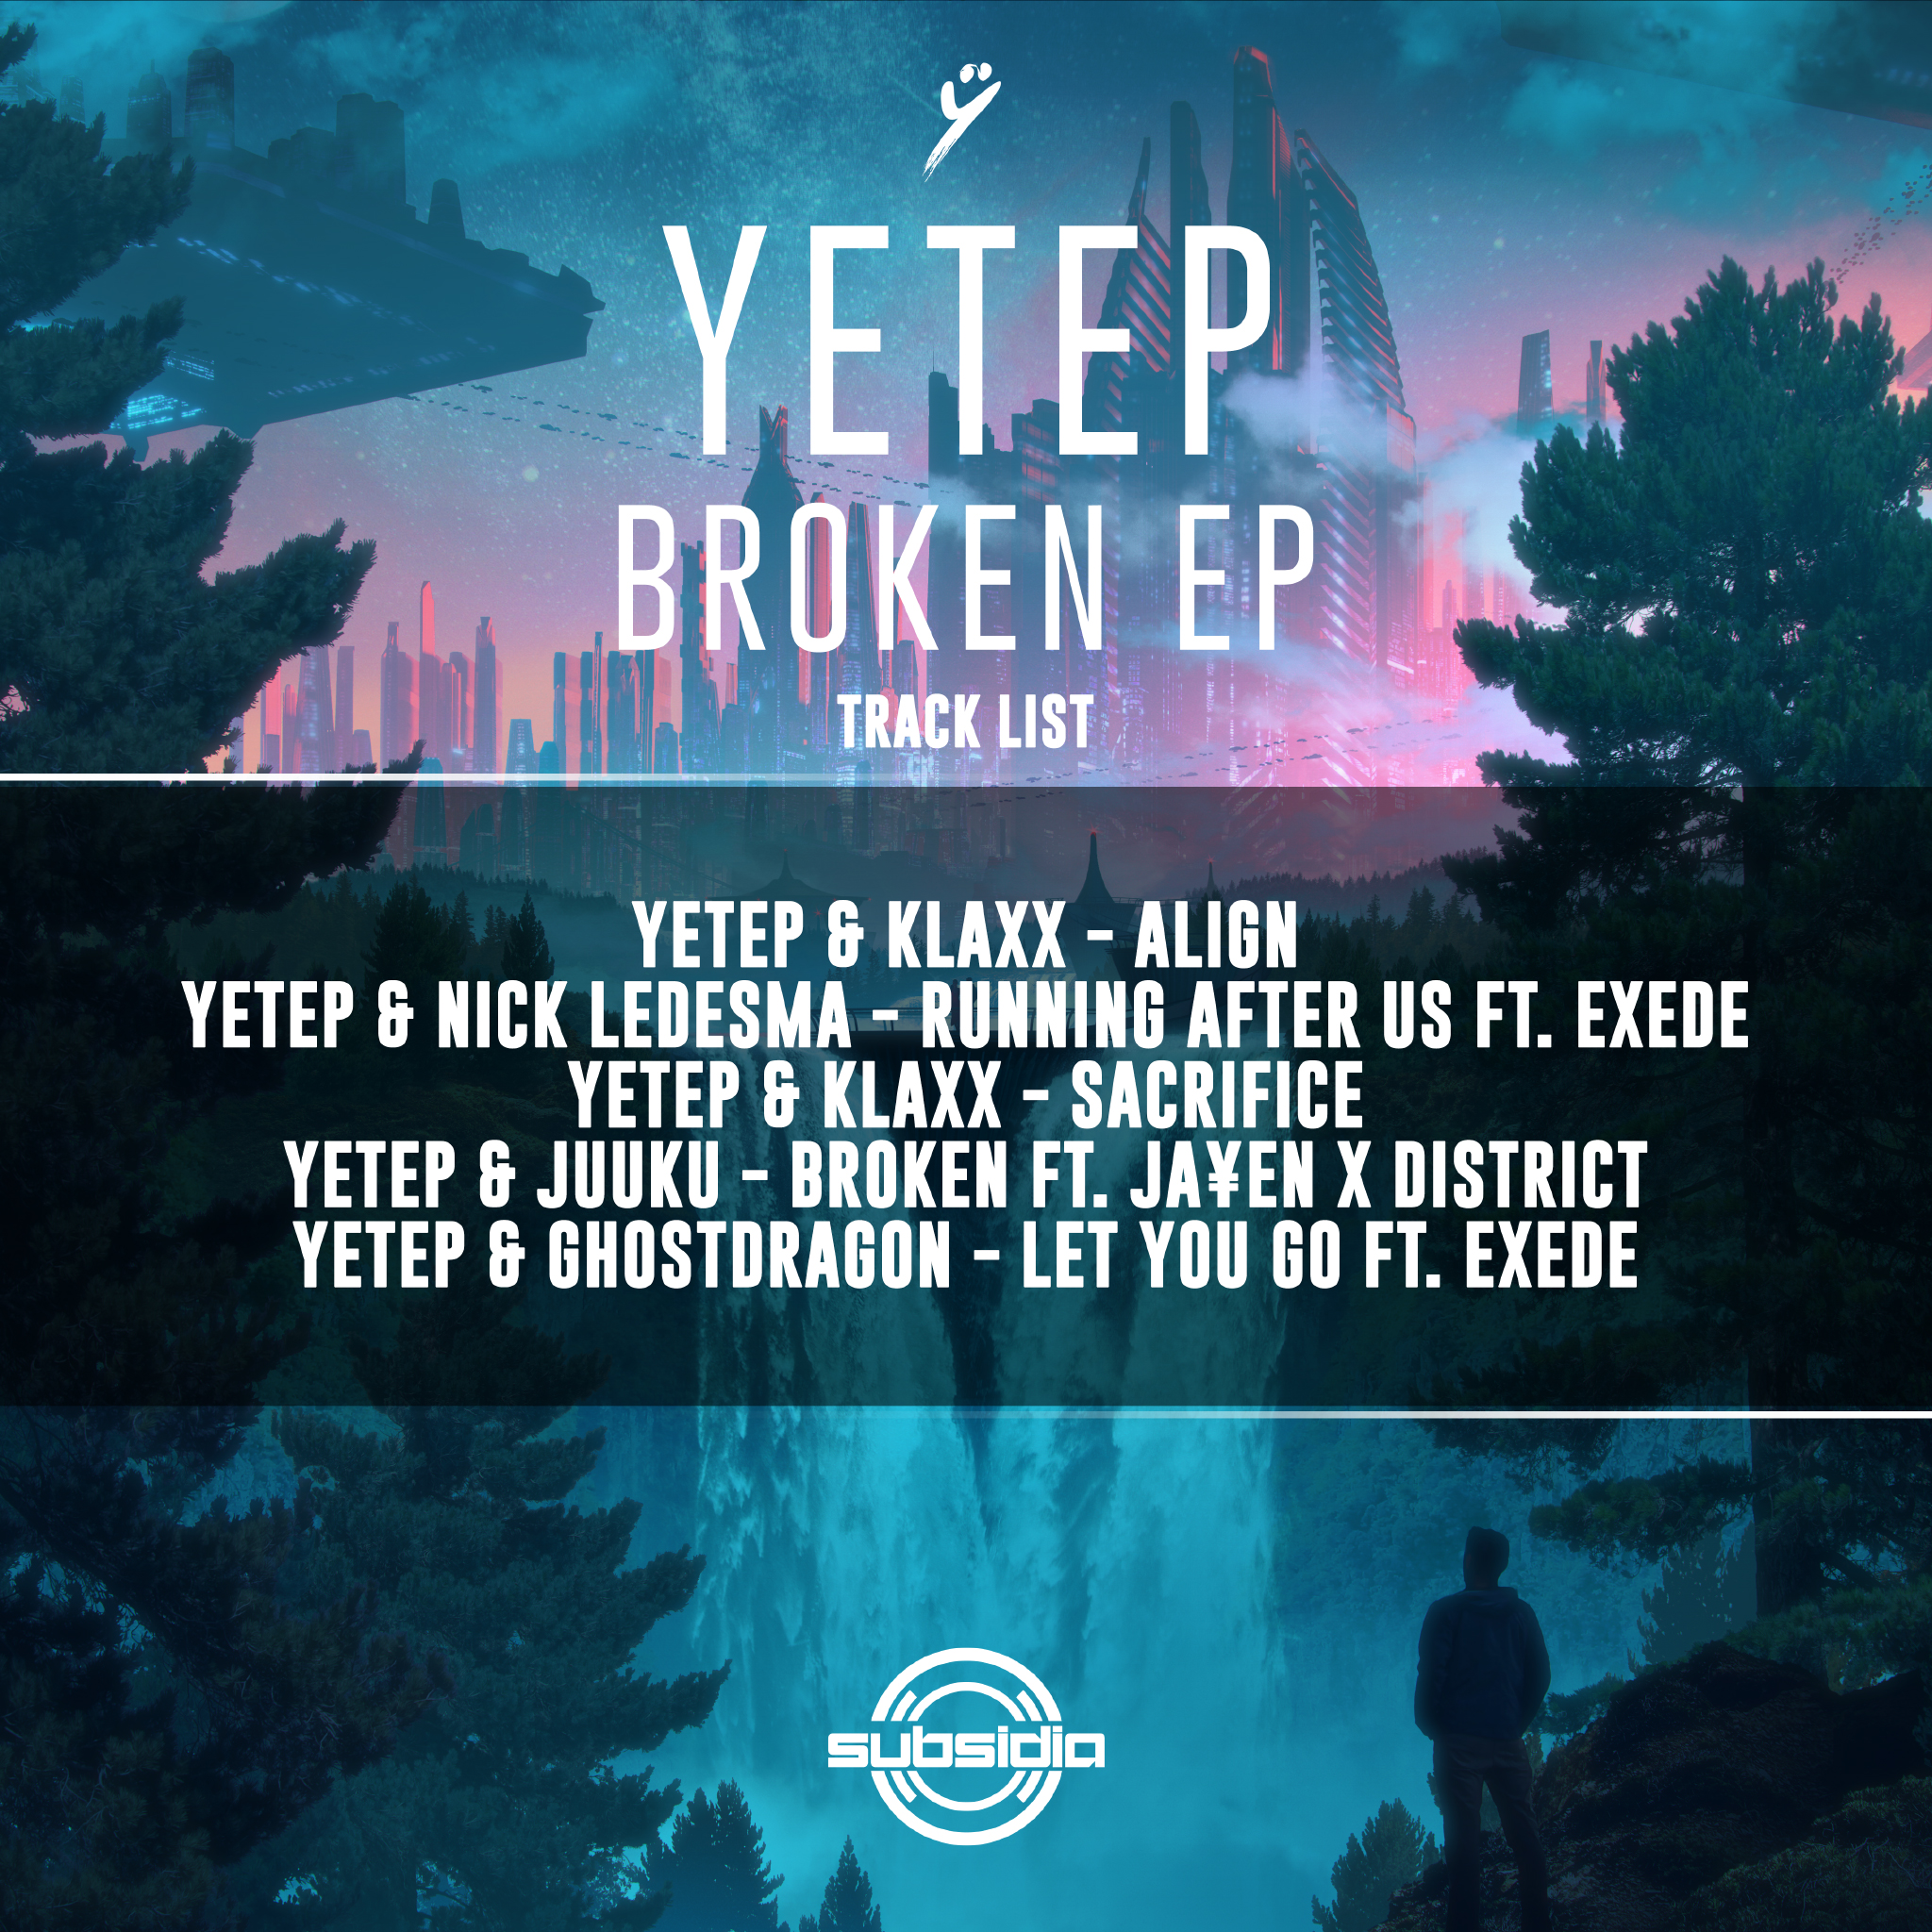 Yetep Broken Tracklist